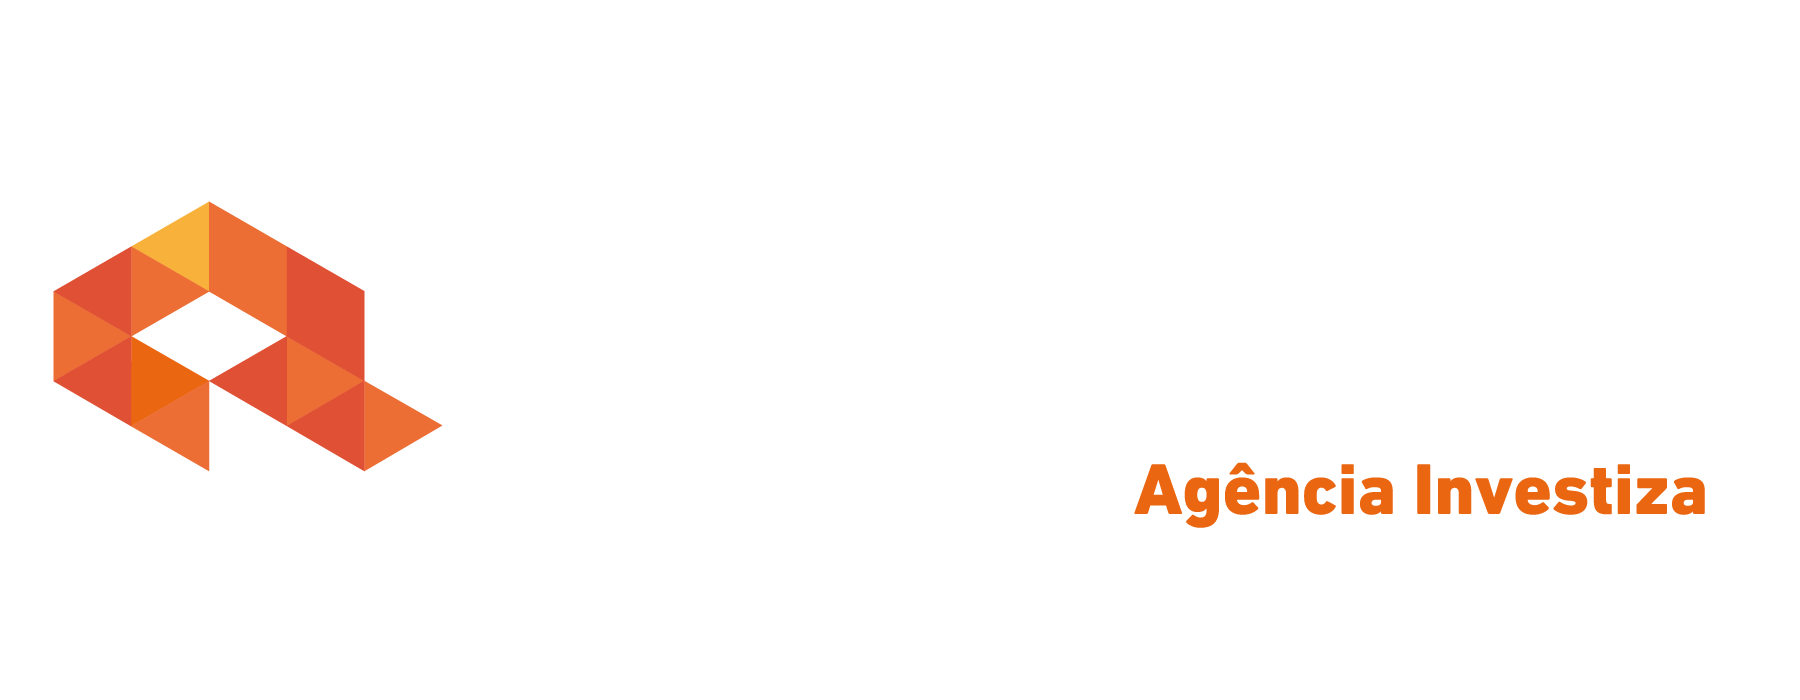 Logo crédito real Crédito Real Investiza